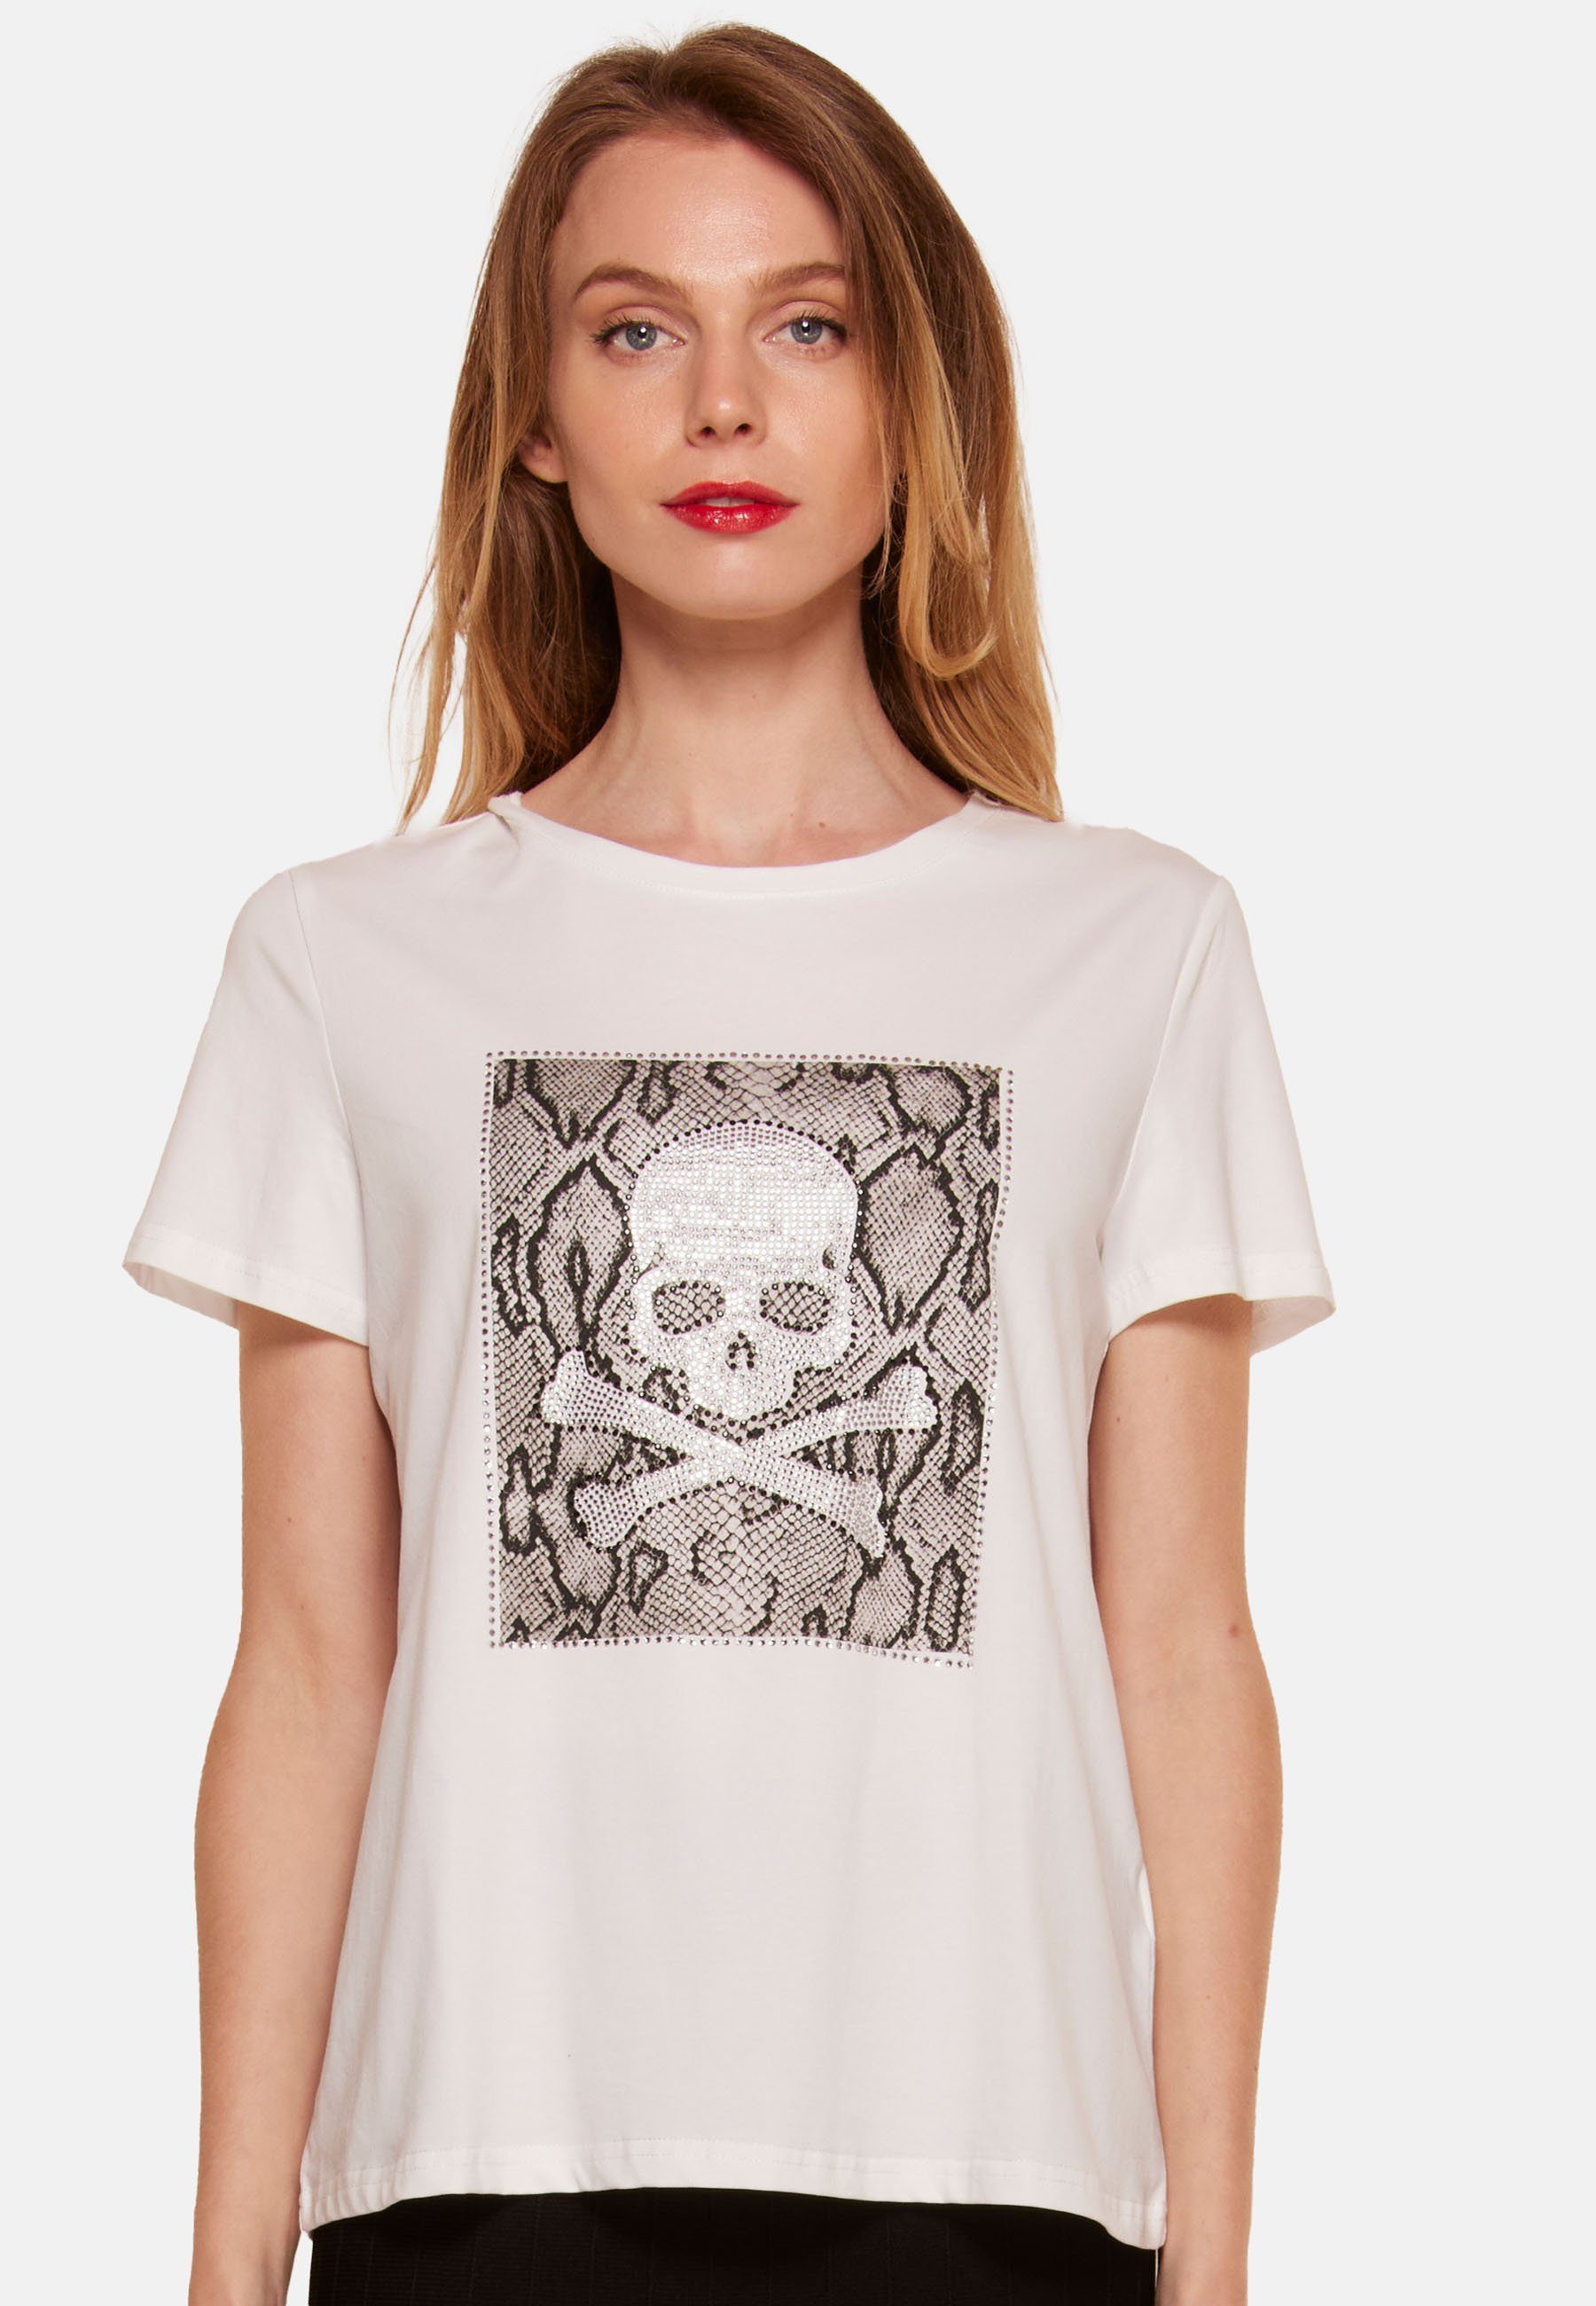 T-shirt Tooche weiss Totenkopf Print-Shirt